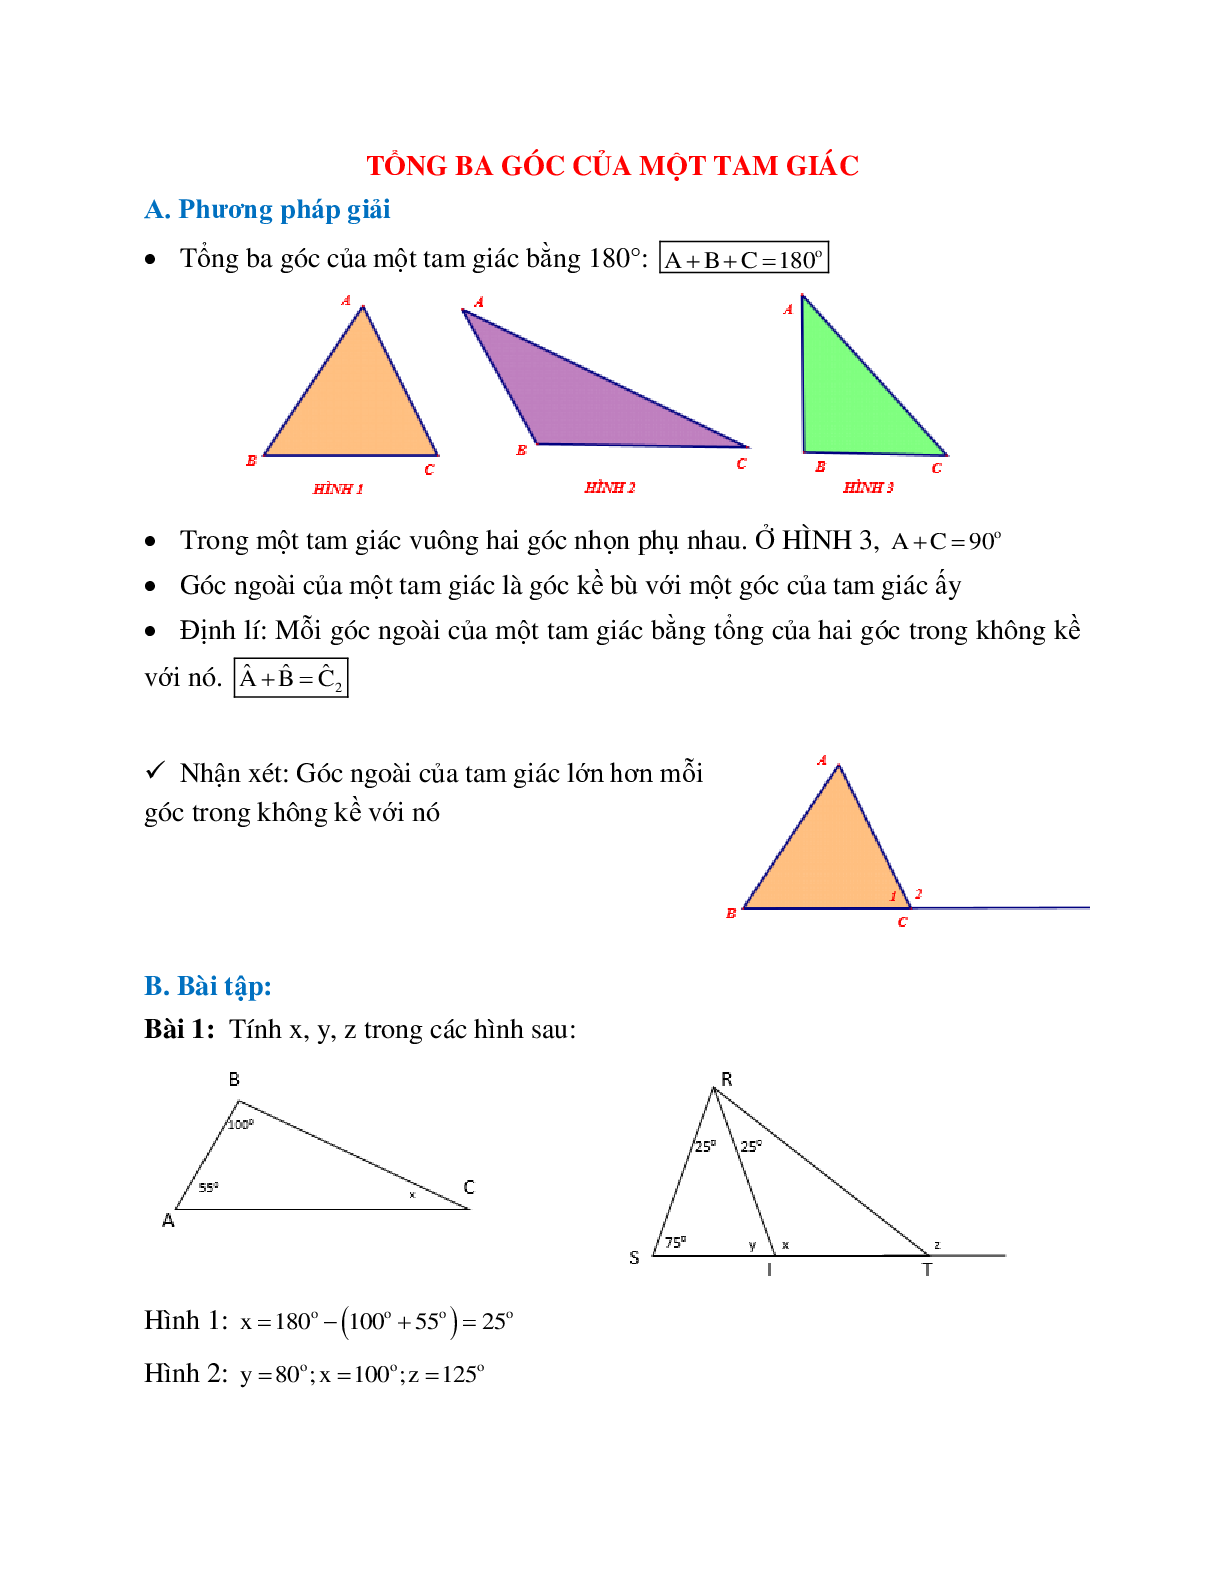 Lý thuyết, bài tập về Tổng ba góc trong một tam giác chọn lọc (trang 1)